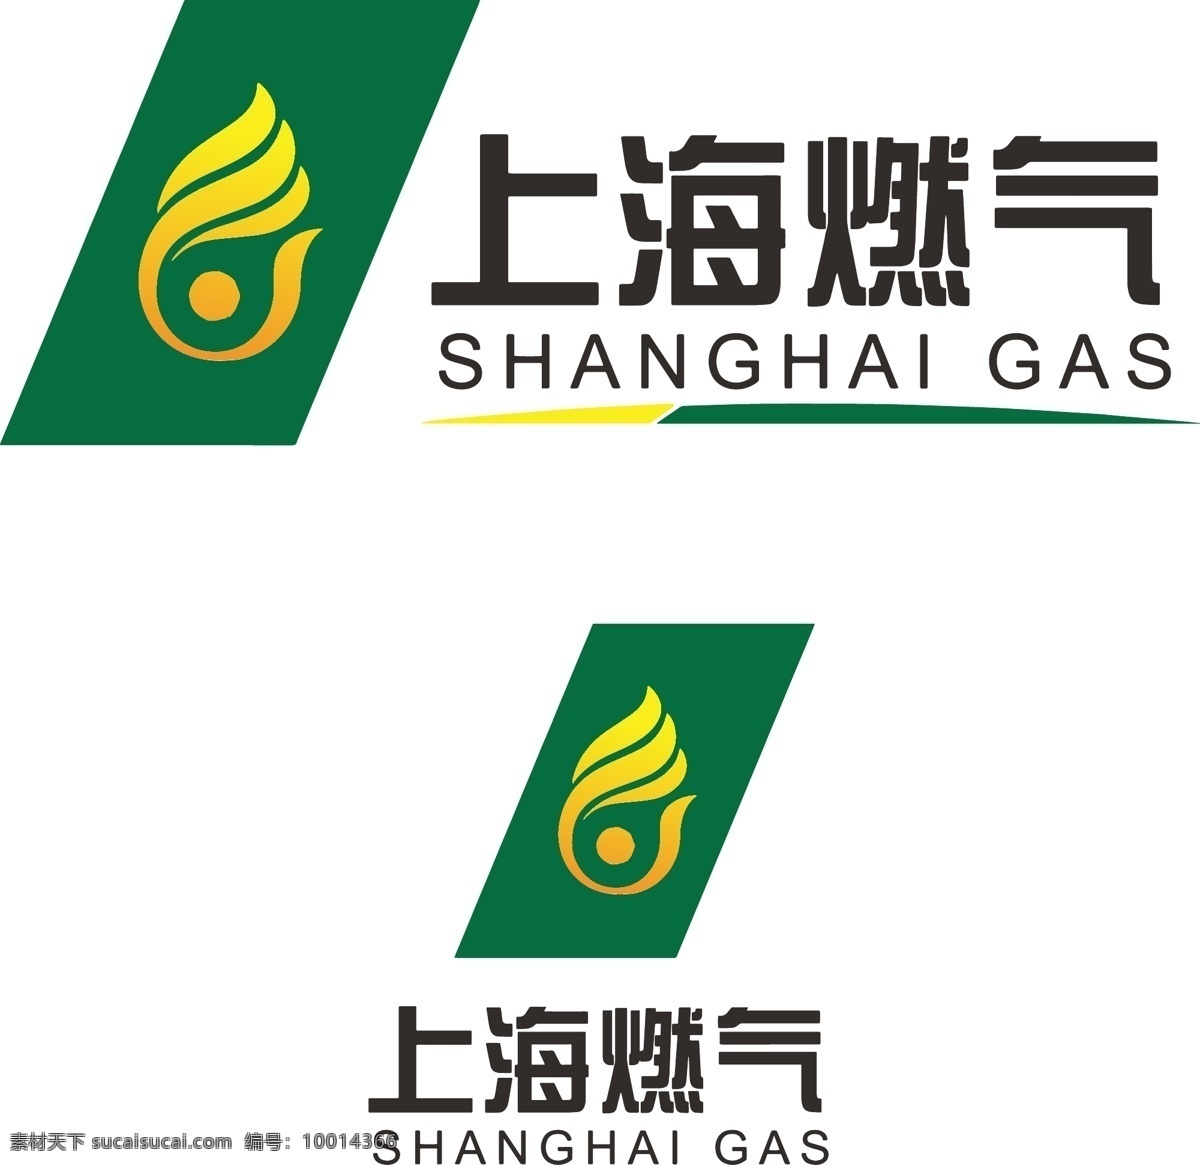 上海 燃气 logo 上海燃气 燃气标志 市政标志 燃气logo 绿色 黄绿搭配 白色